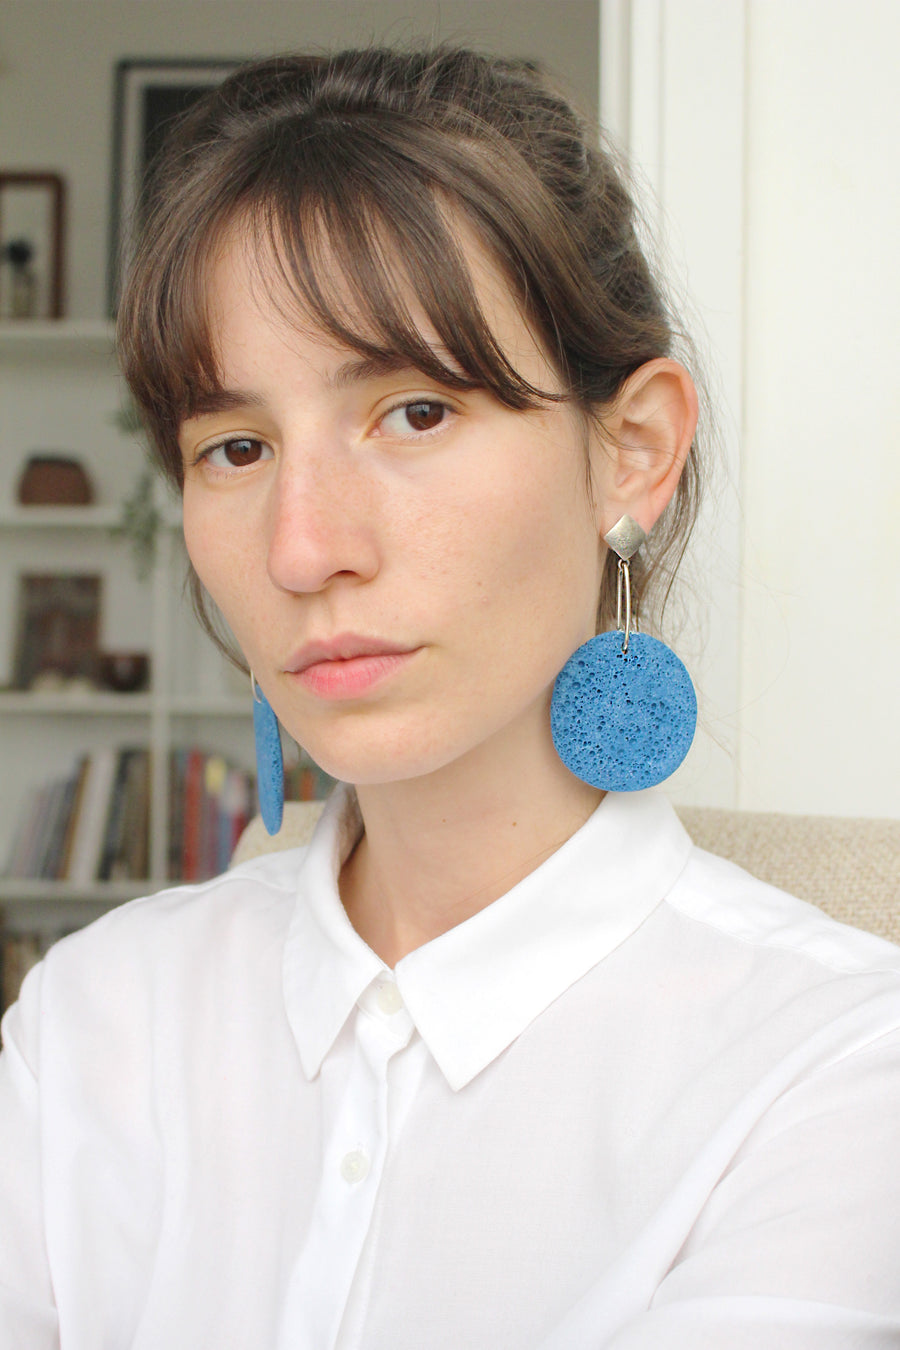 Sofi earring / Blue foam